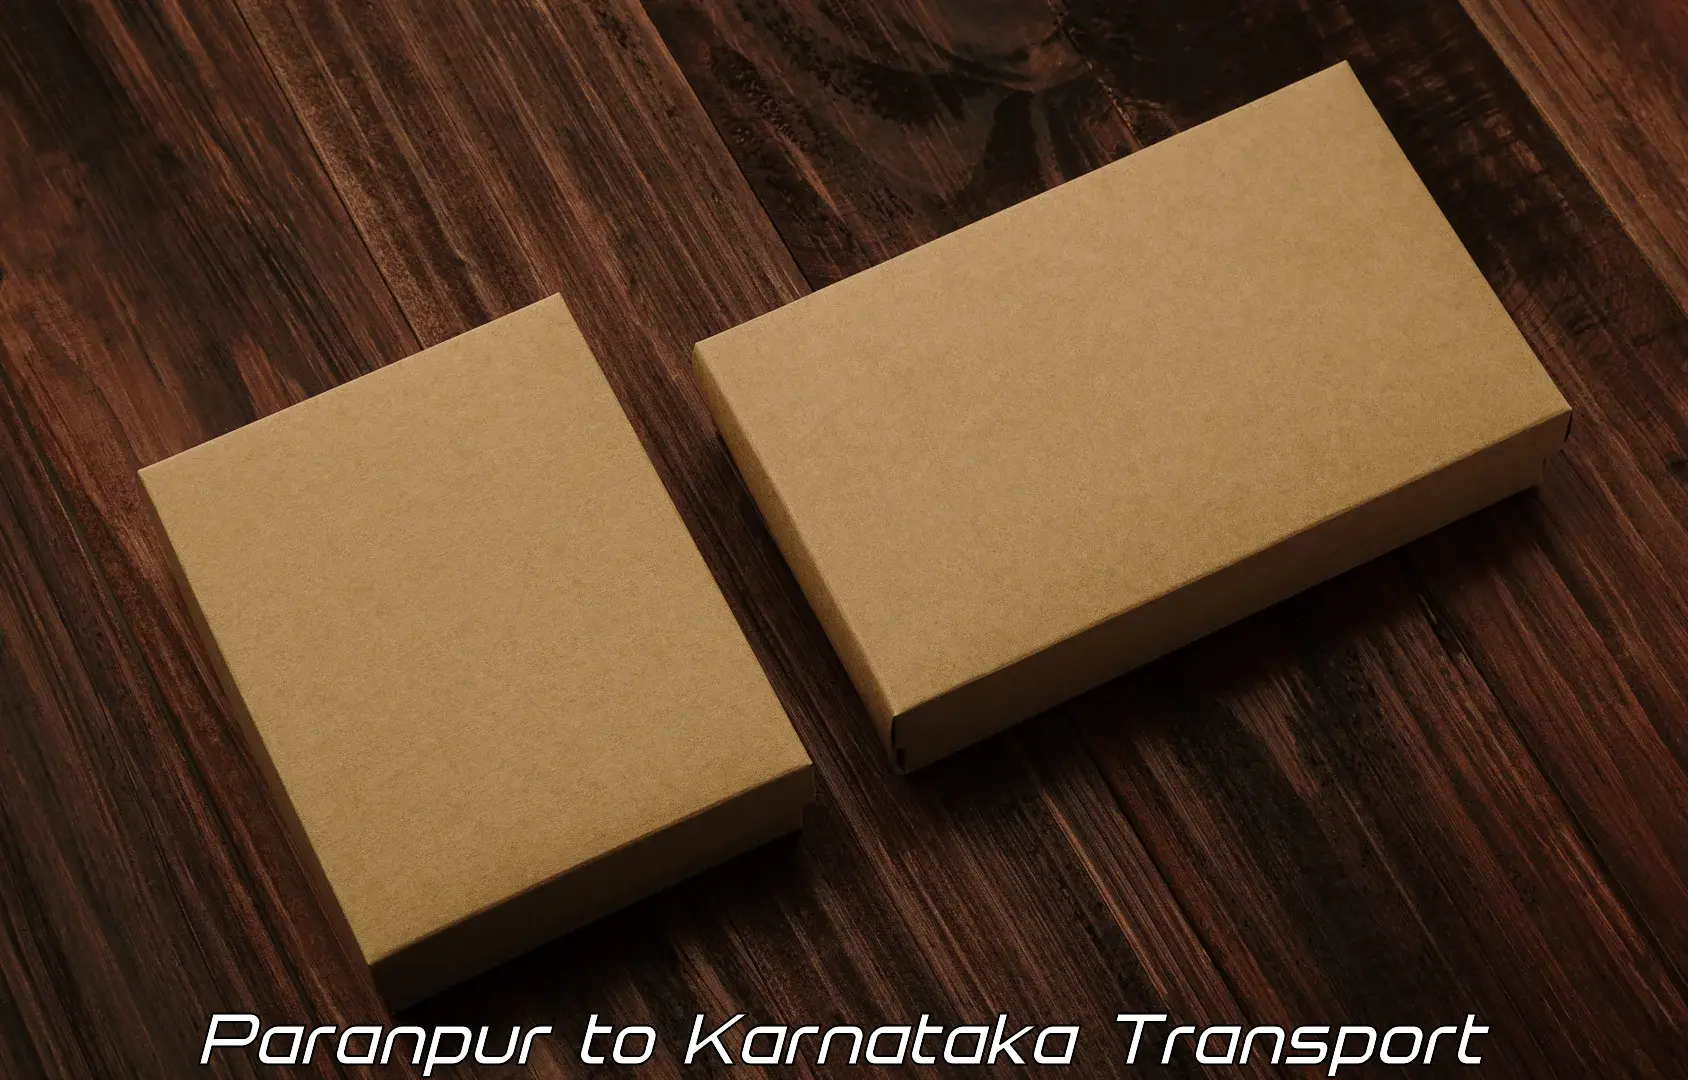 Parcel transport services Paranpur to Honnavar